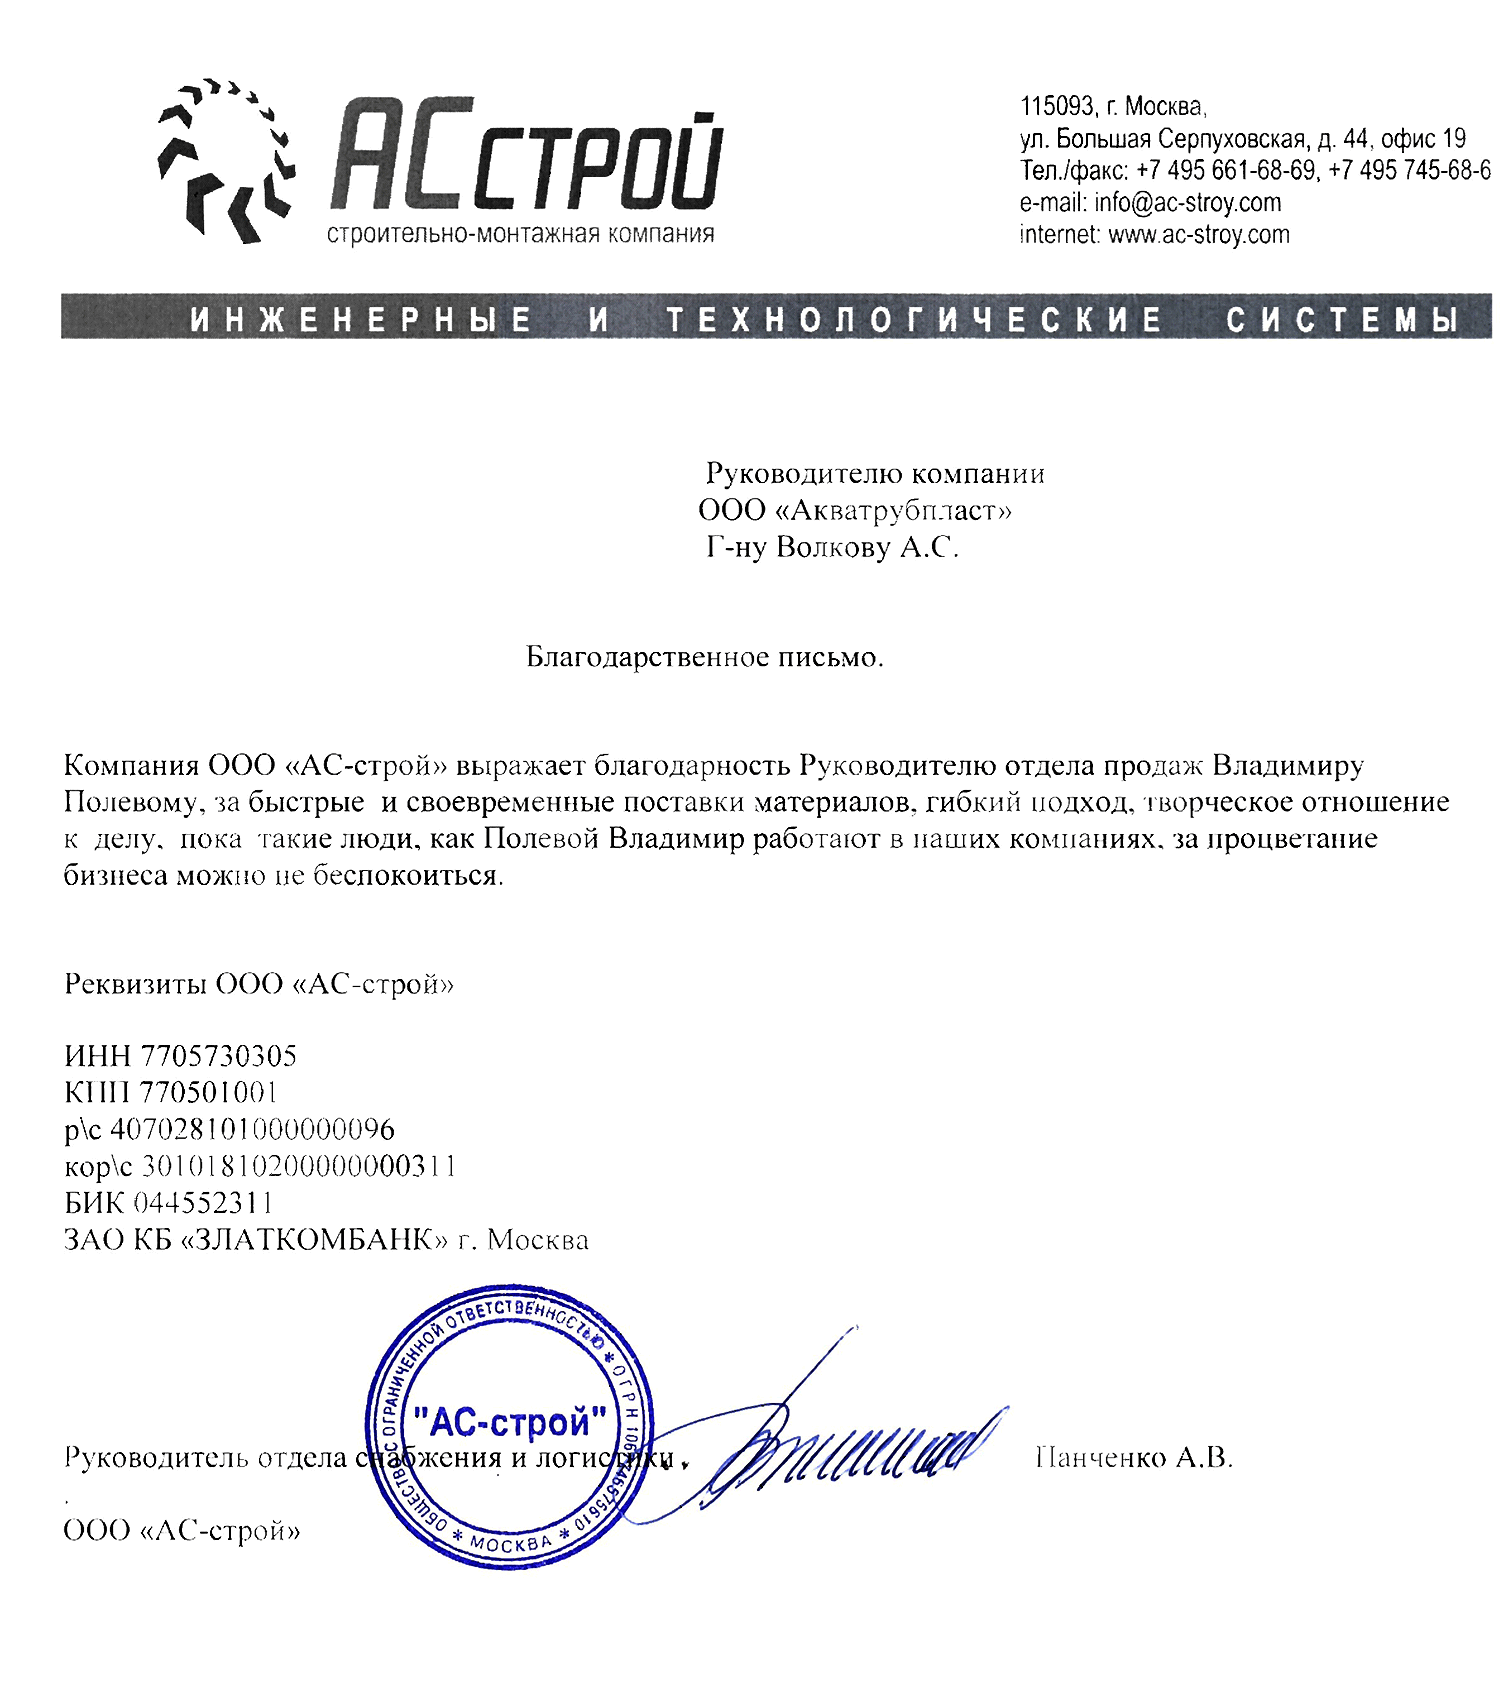 Благодарственное письмо от компании "АС-строй"